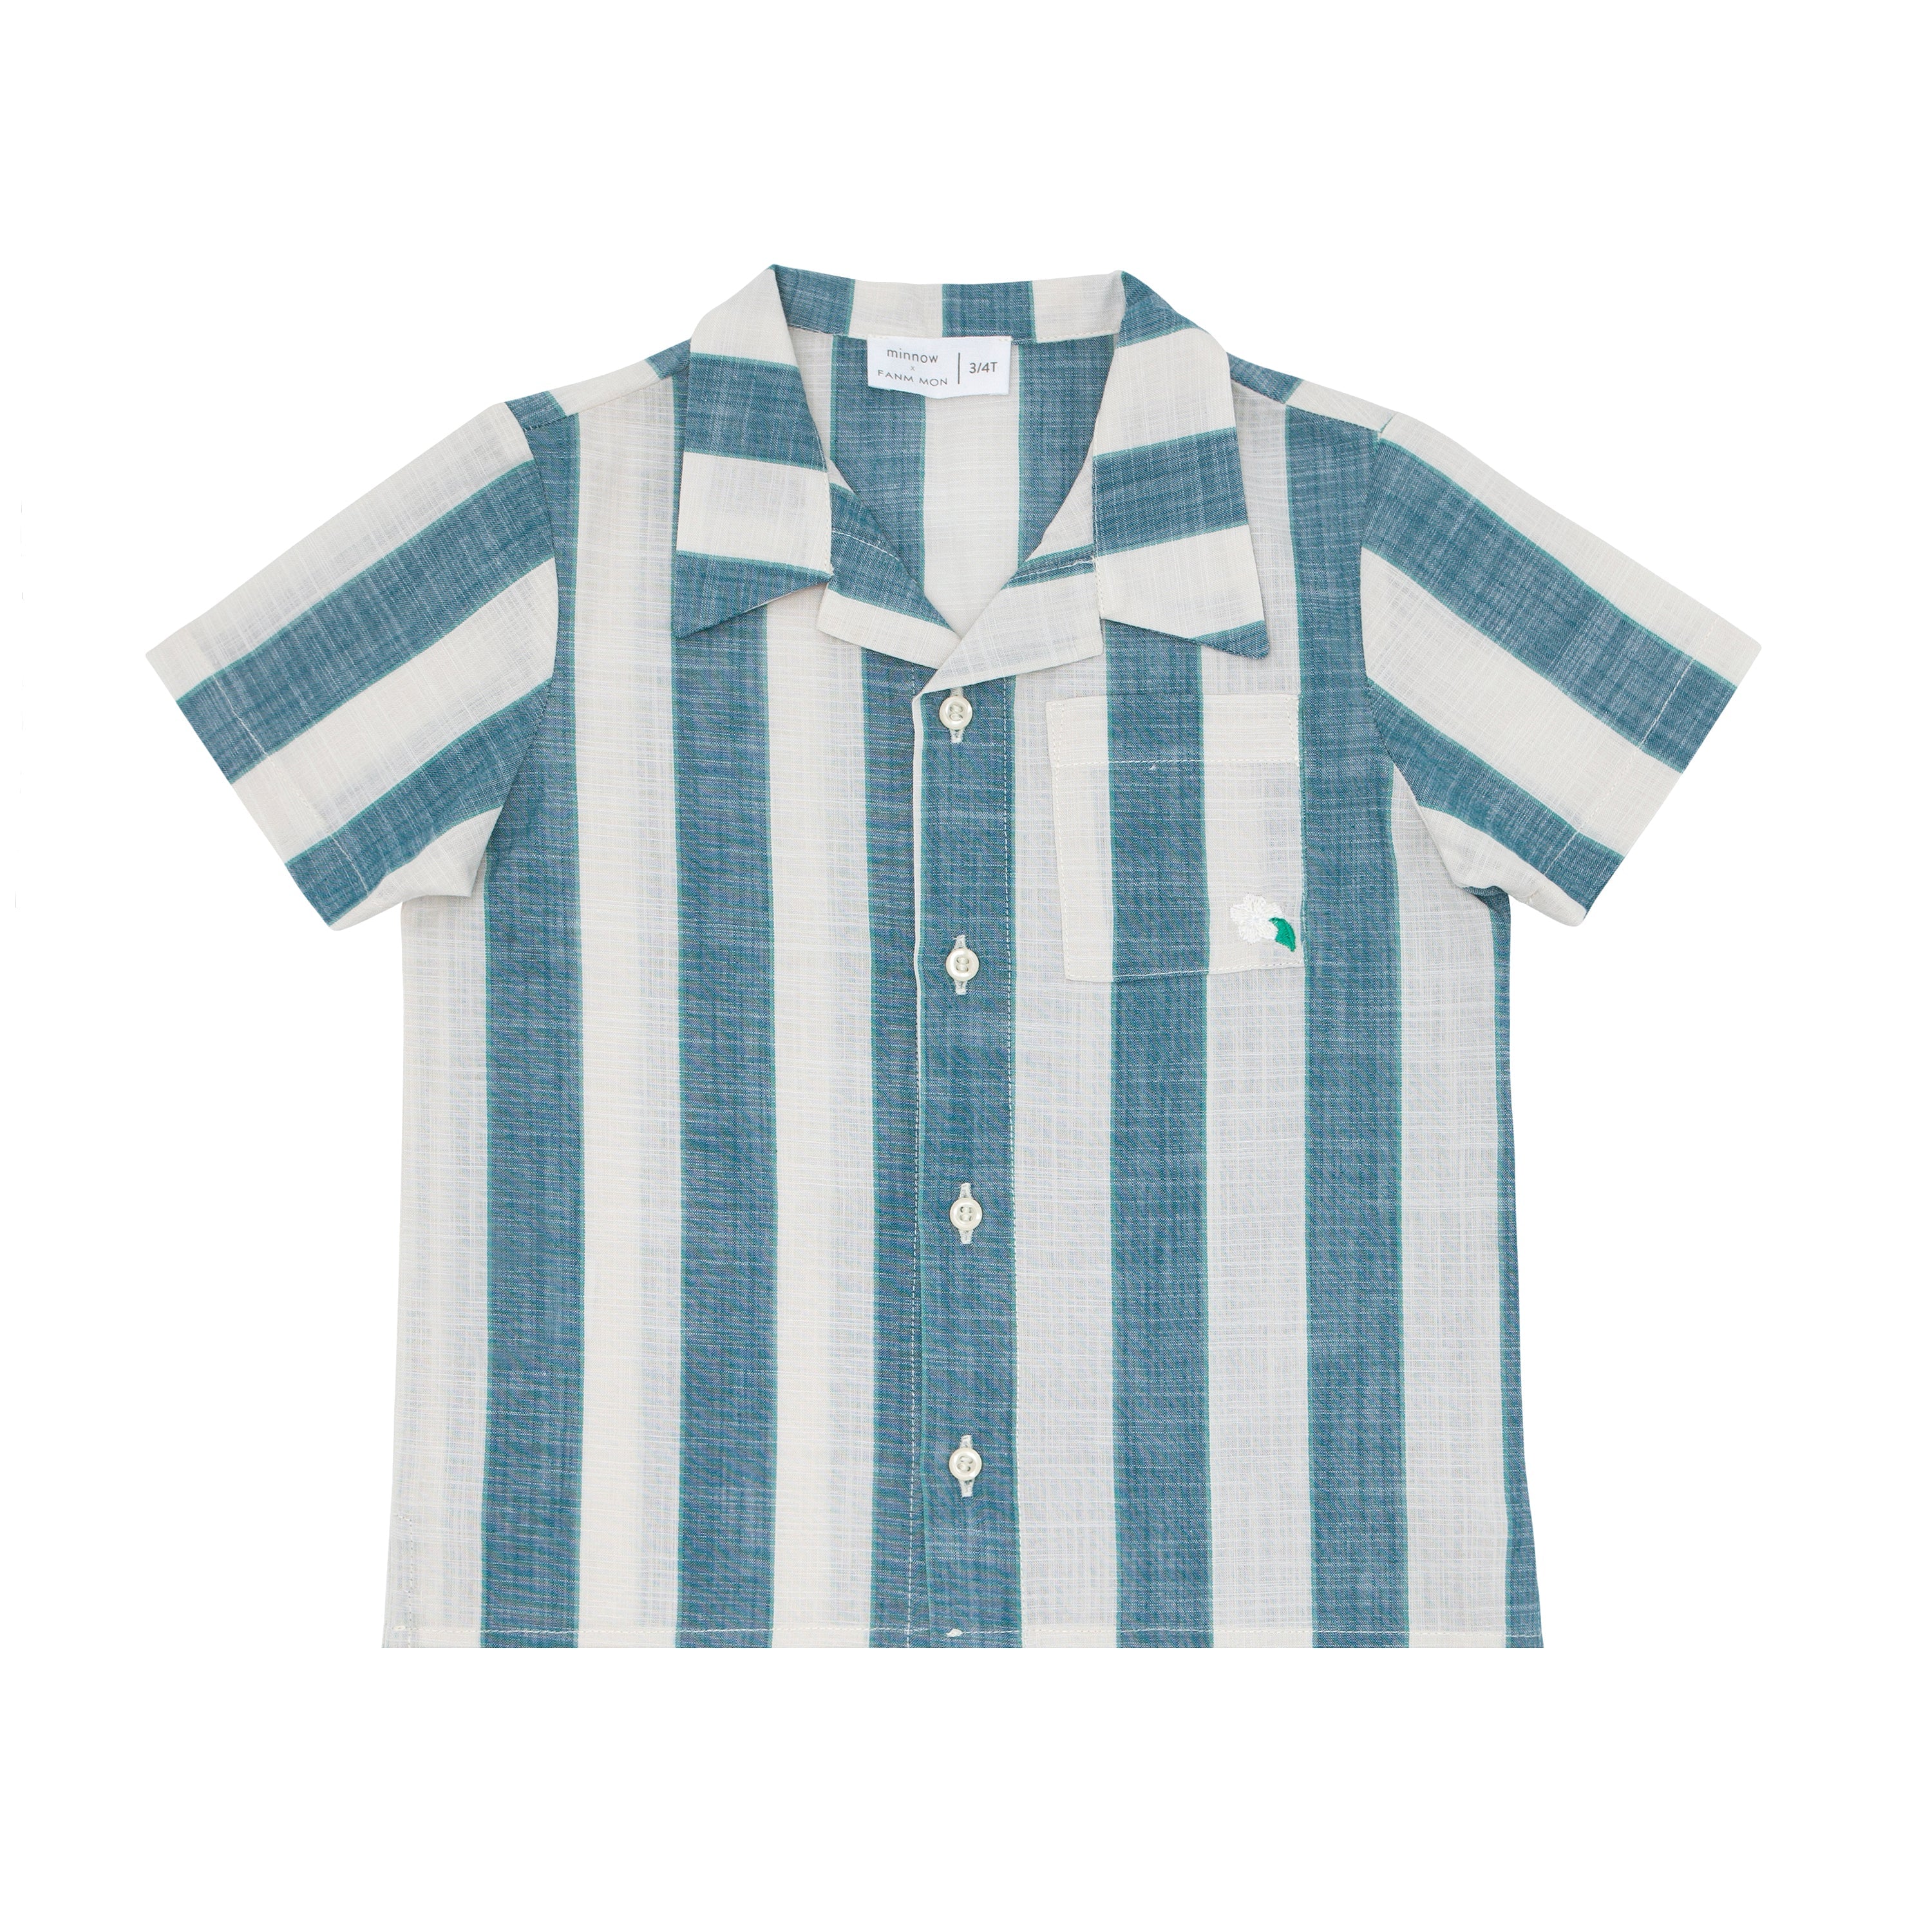 Fanm Mon x Minnow Boy's Striped Linen Shirt by Fanm Mon